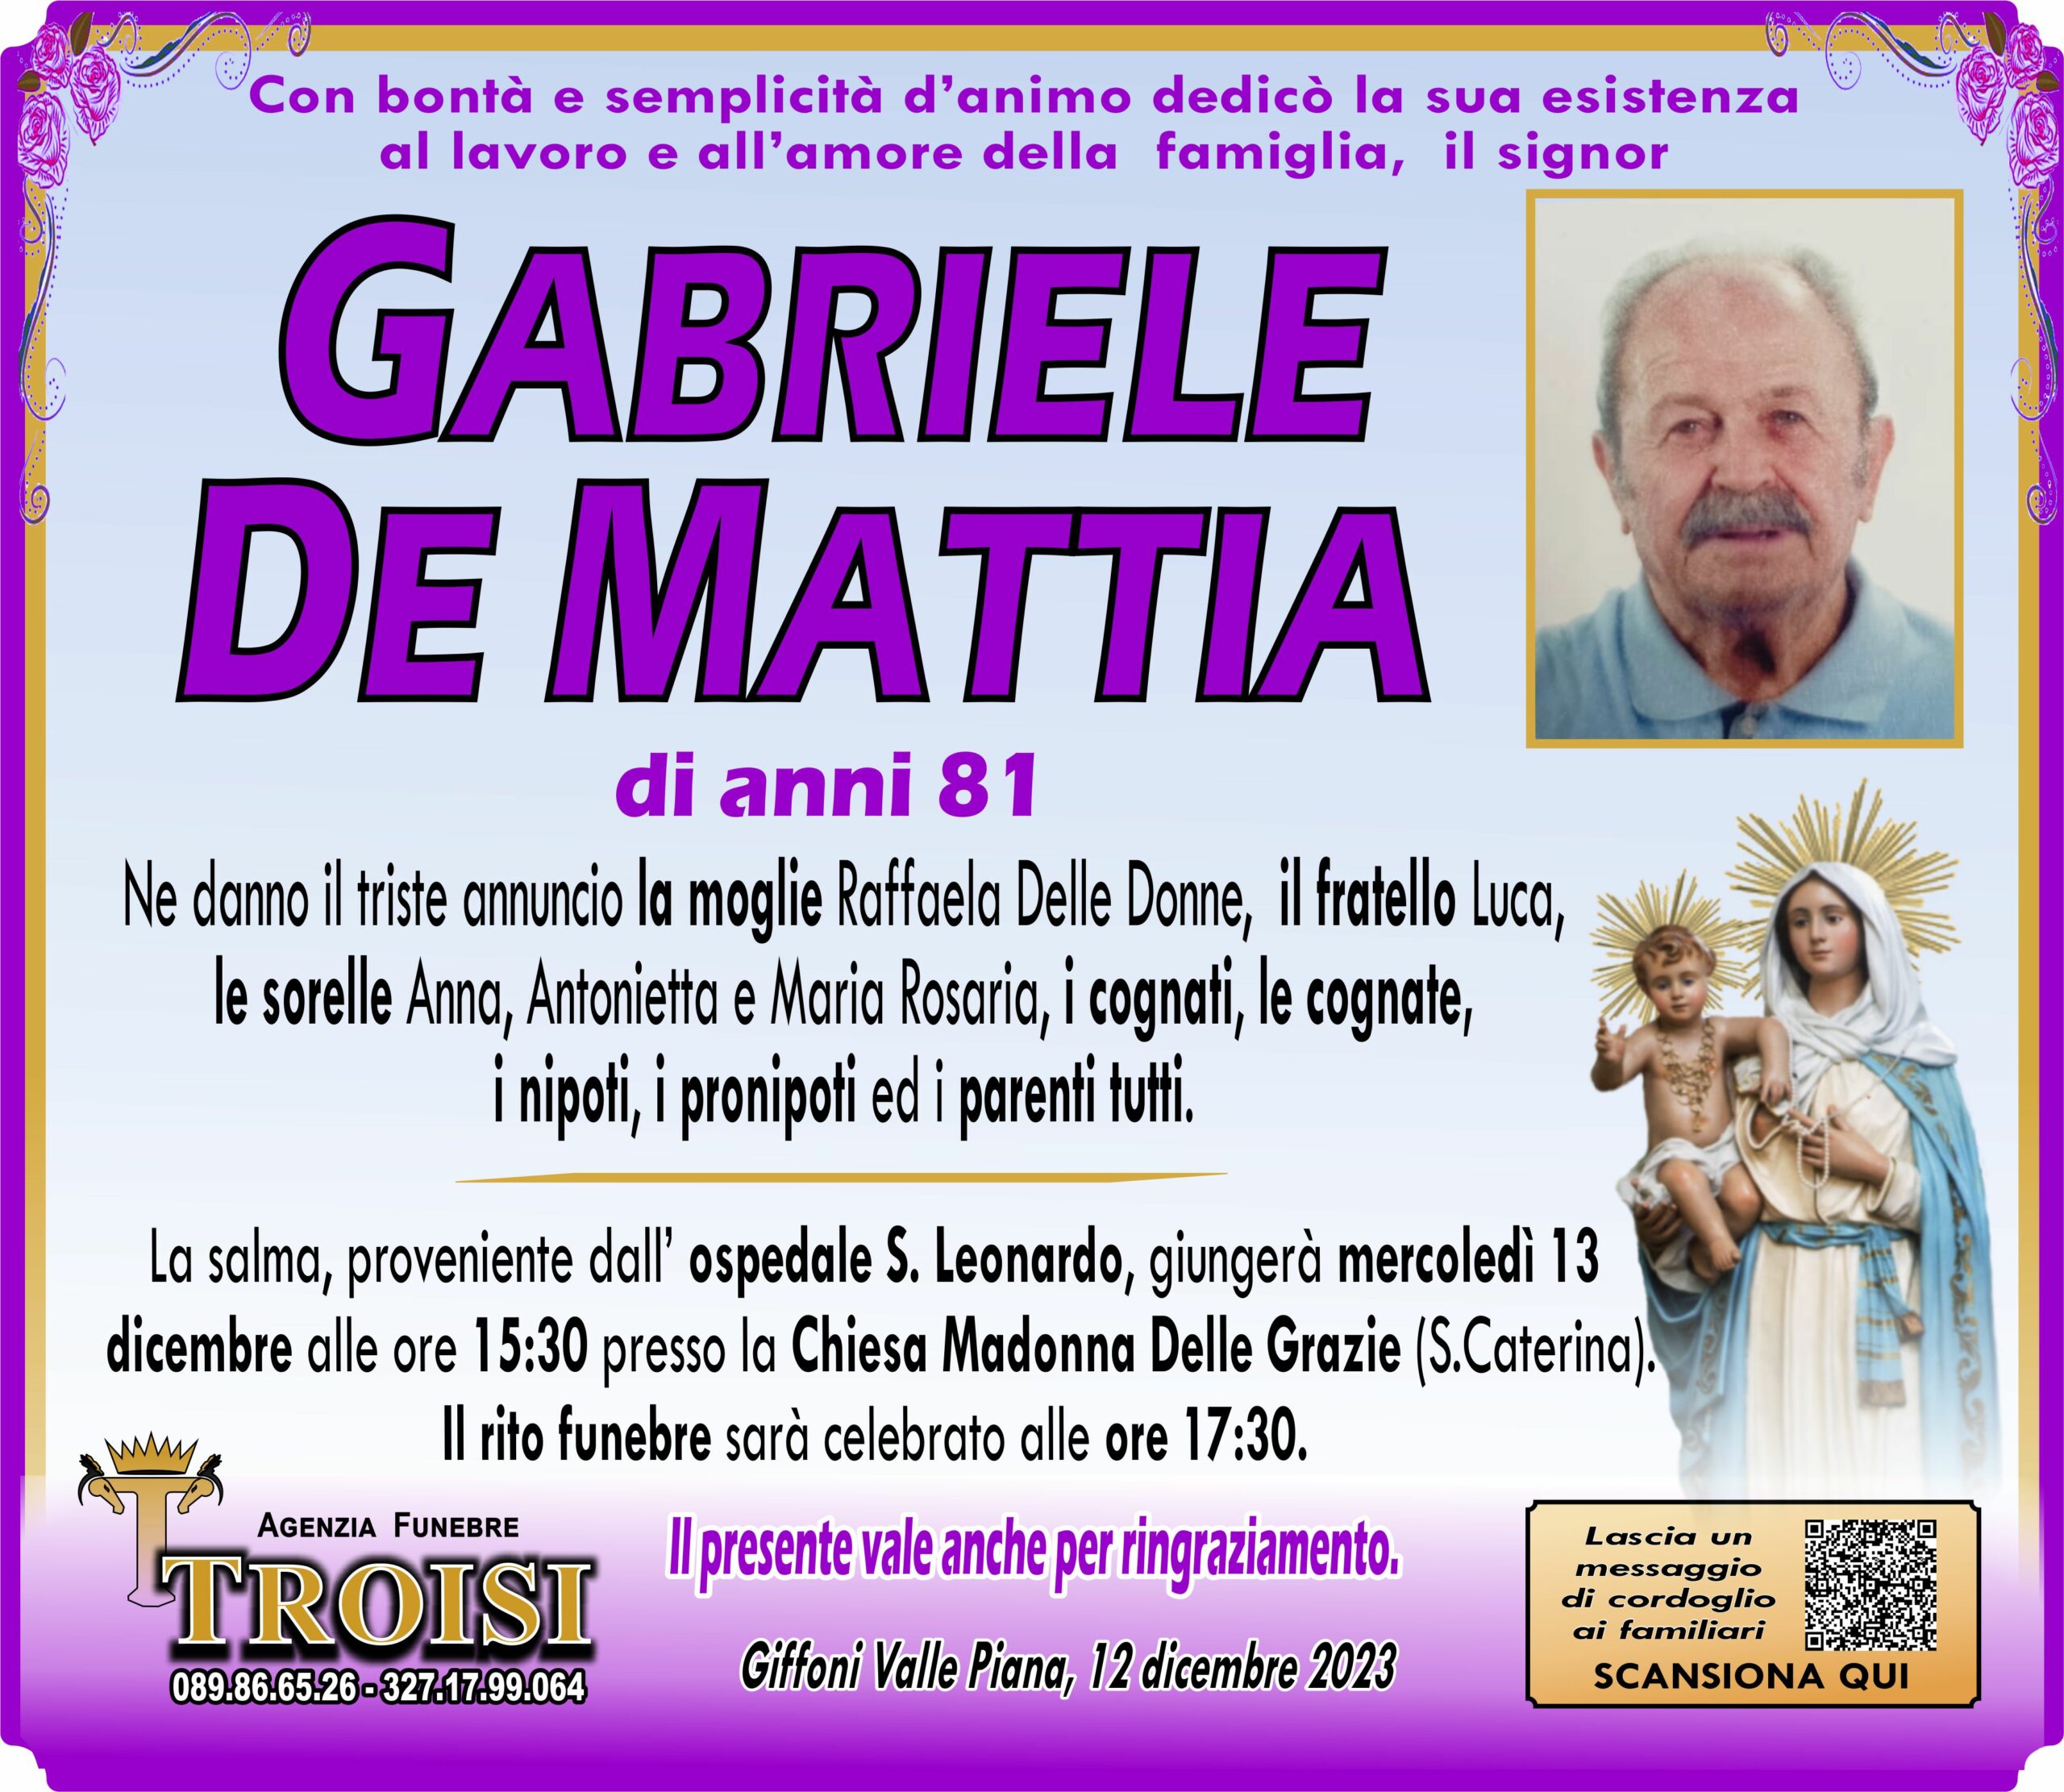 GABRIELE DE MATTIA